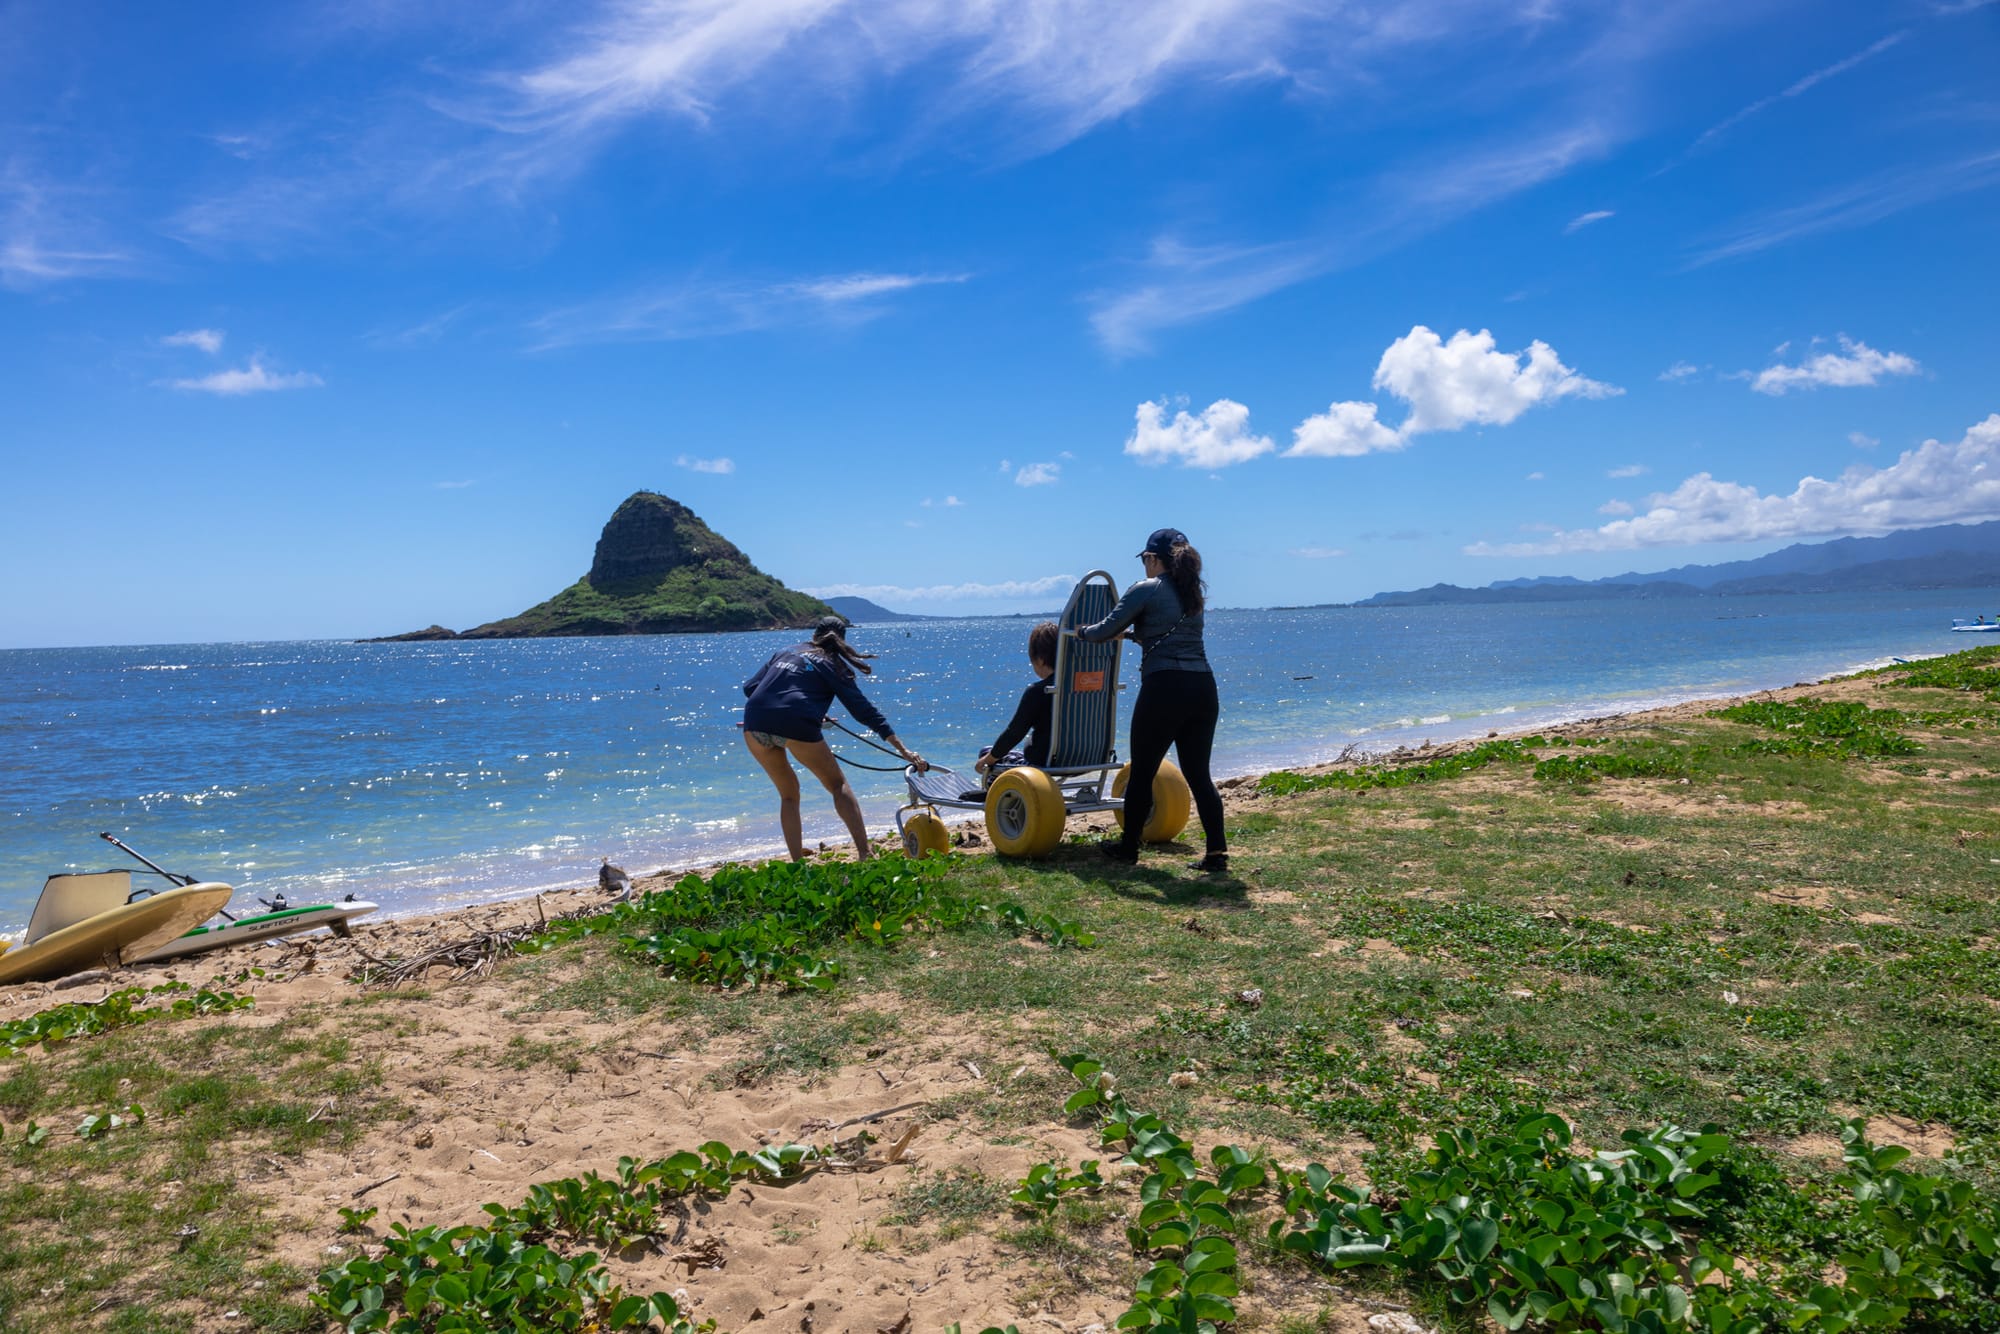 Mobi-Beach Wheelchair to navigate sandy beaches in Maui